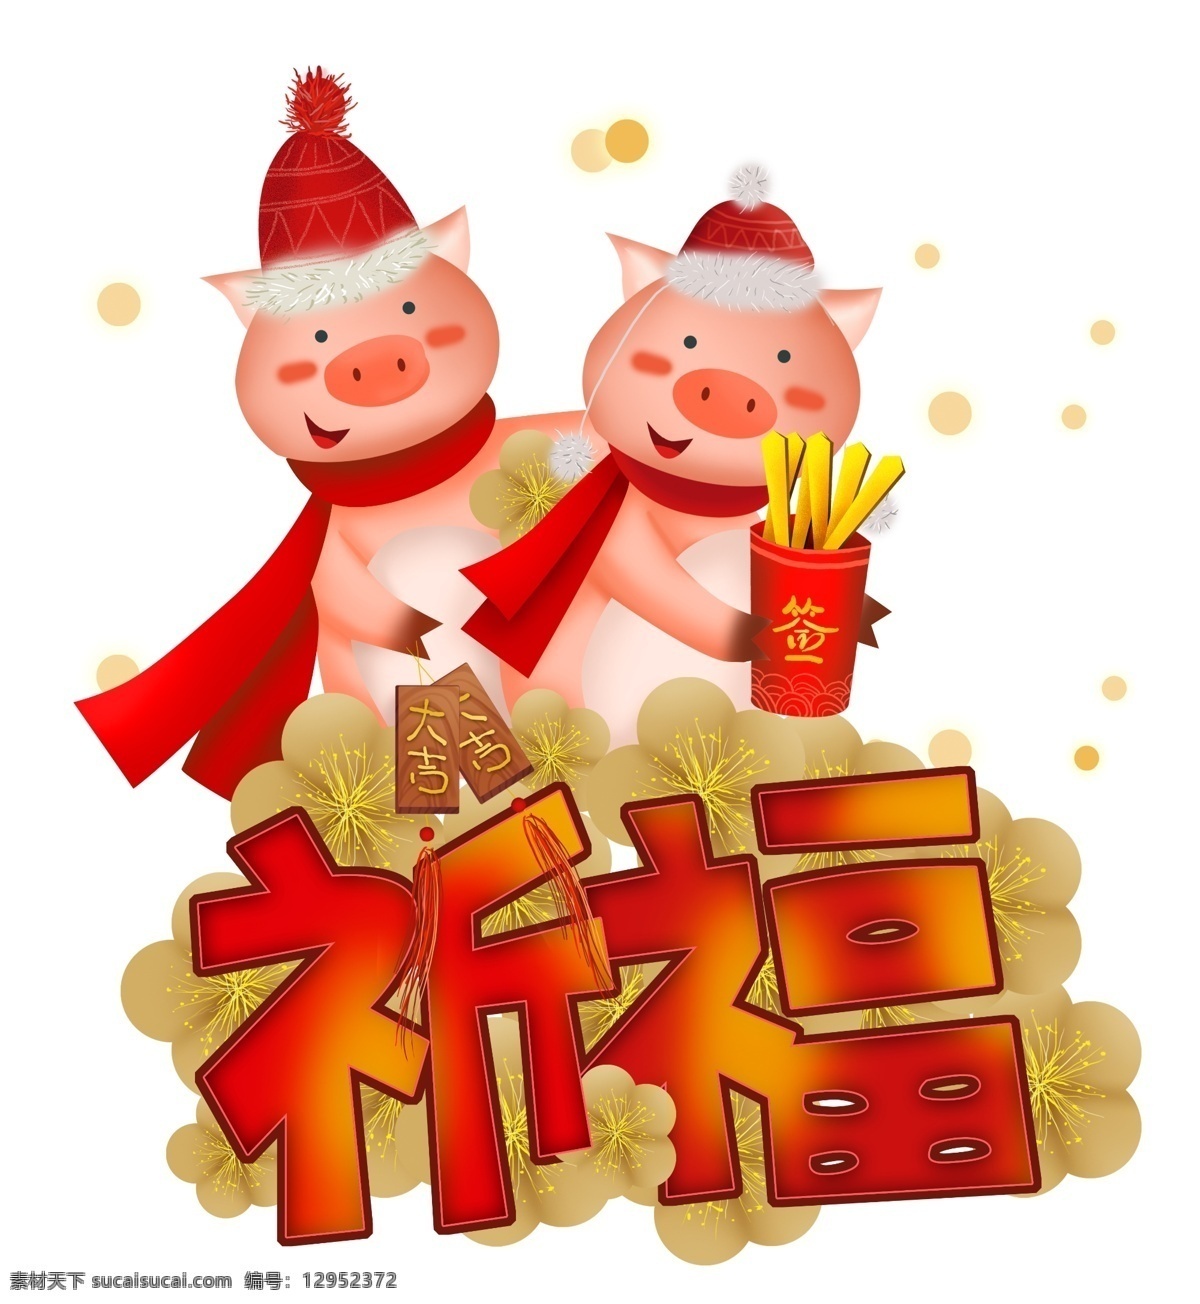 2019 年 新年 祈福 生肖 猪 签筒 农历新年 春节 中国风 小猪 新年大吉 新年红色 梅花 猪年 生肖猪 新年祈福